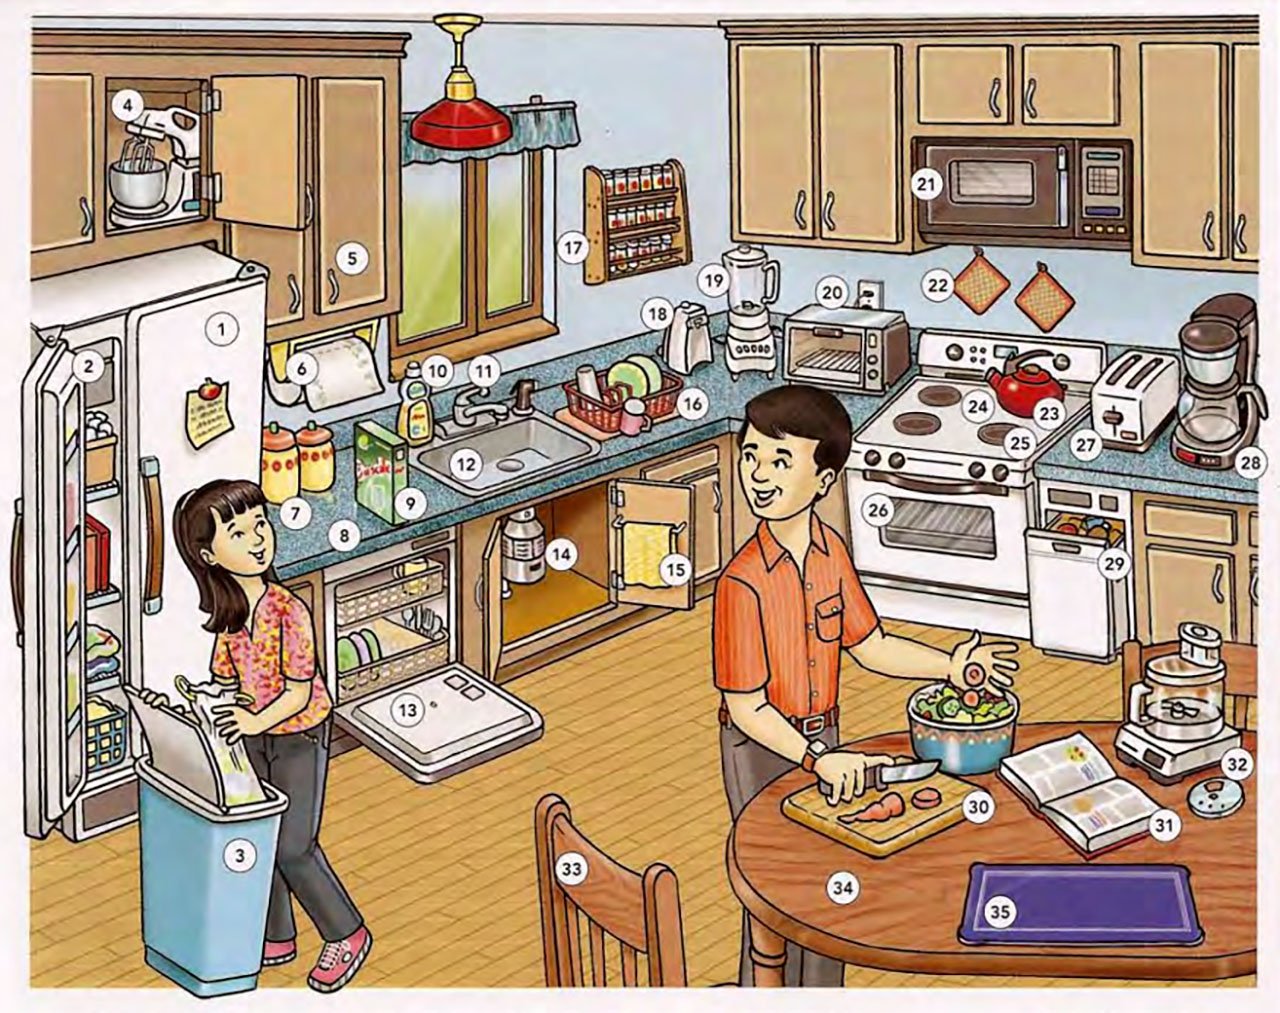 Правила на кухне на английском. Кухня иллюстрация. Картинки для описания. Кухня рисунок. Предметы кухни рисунок.